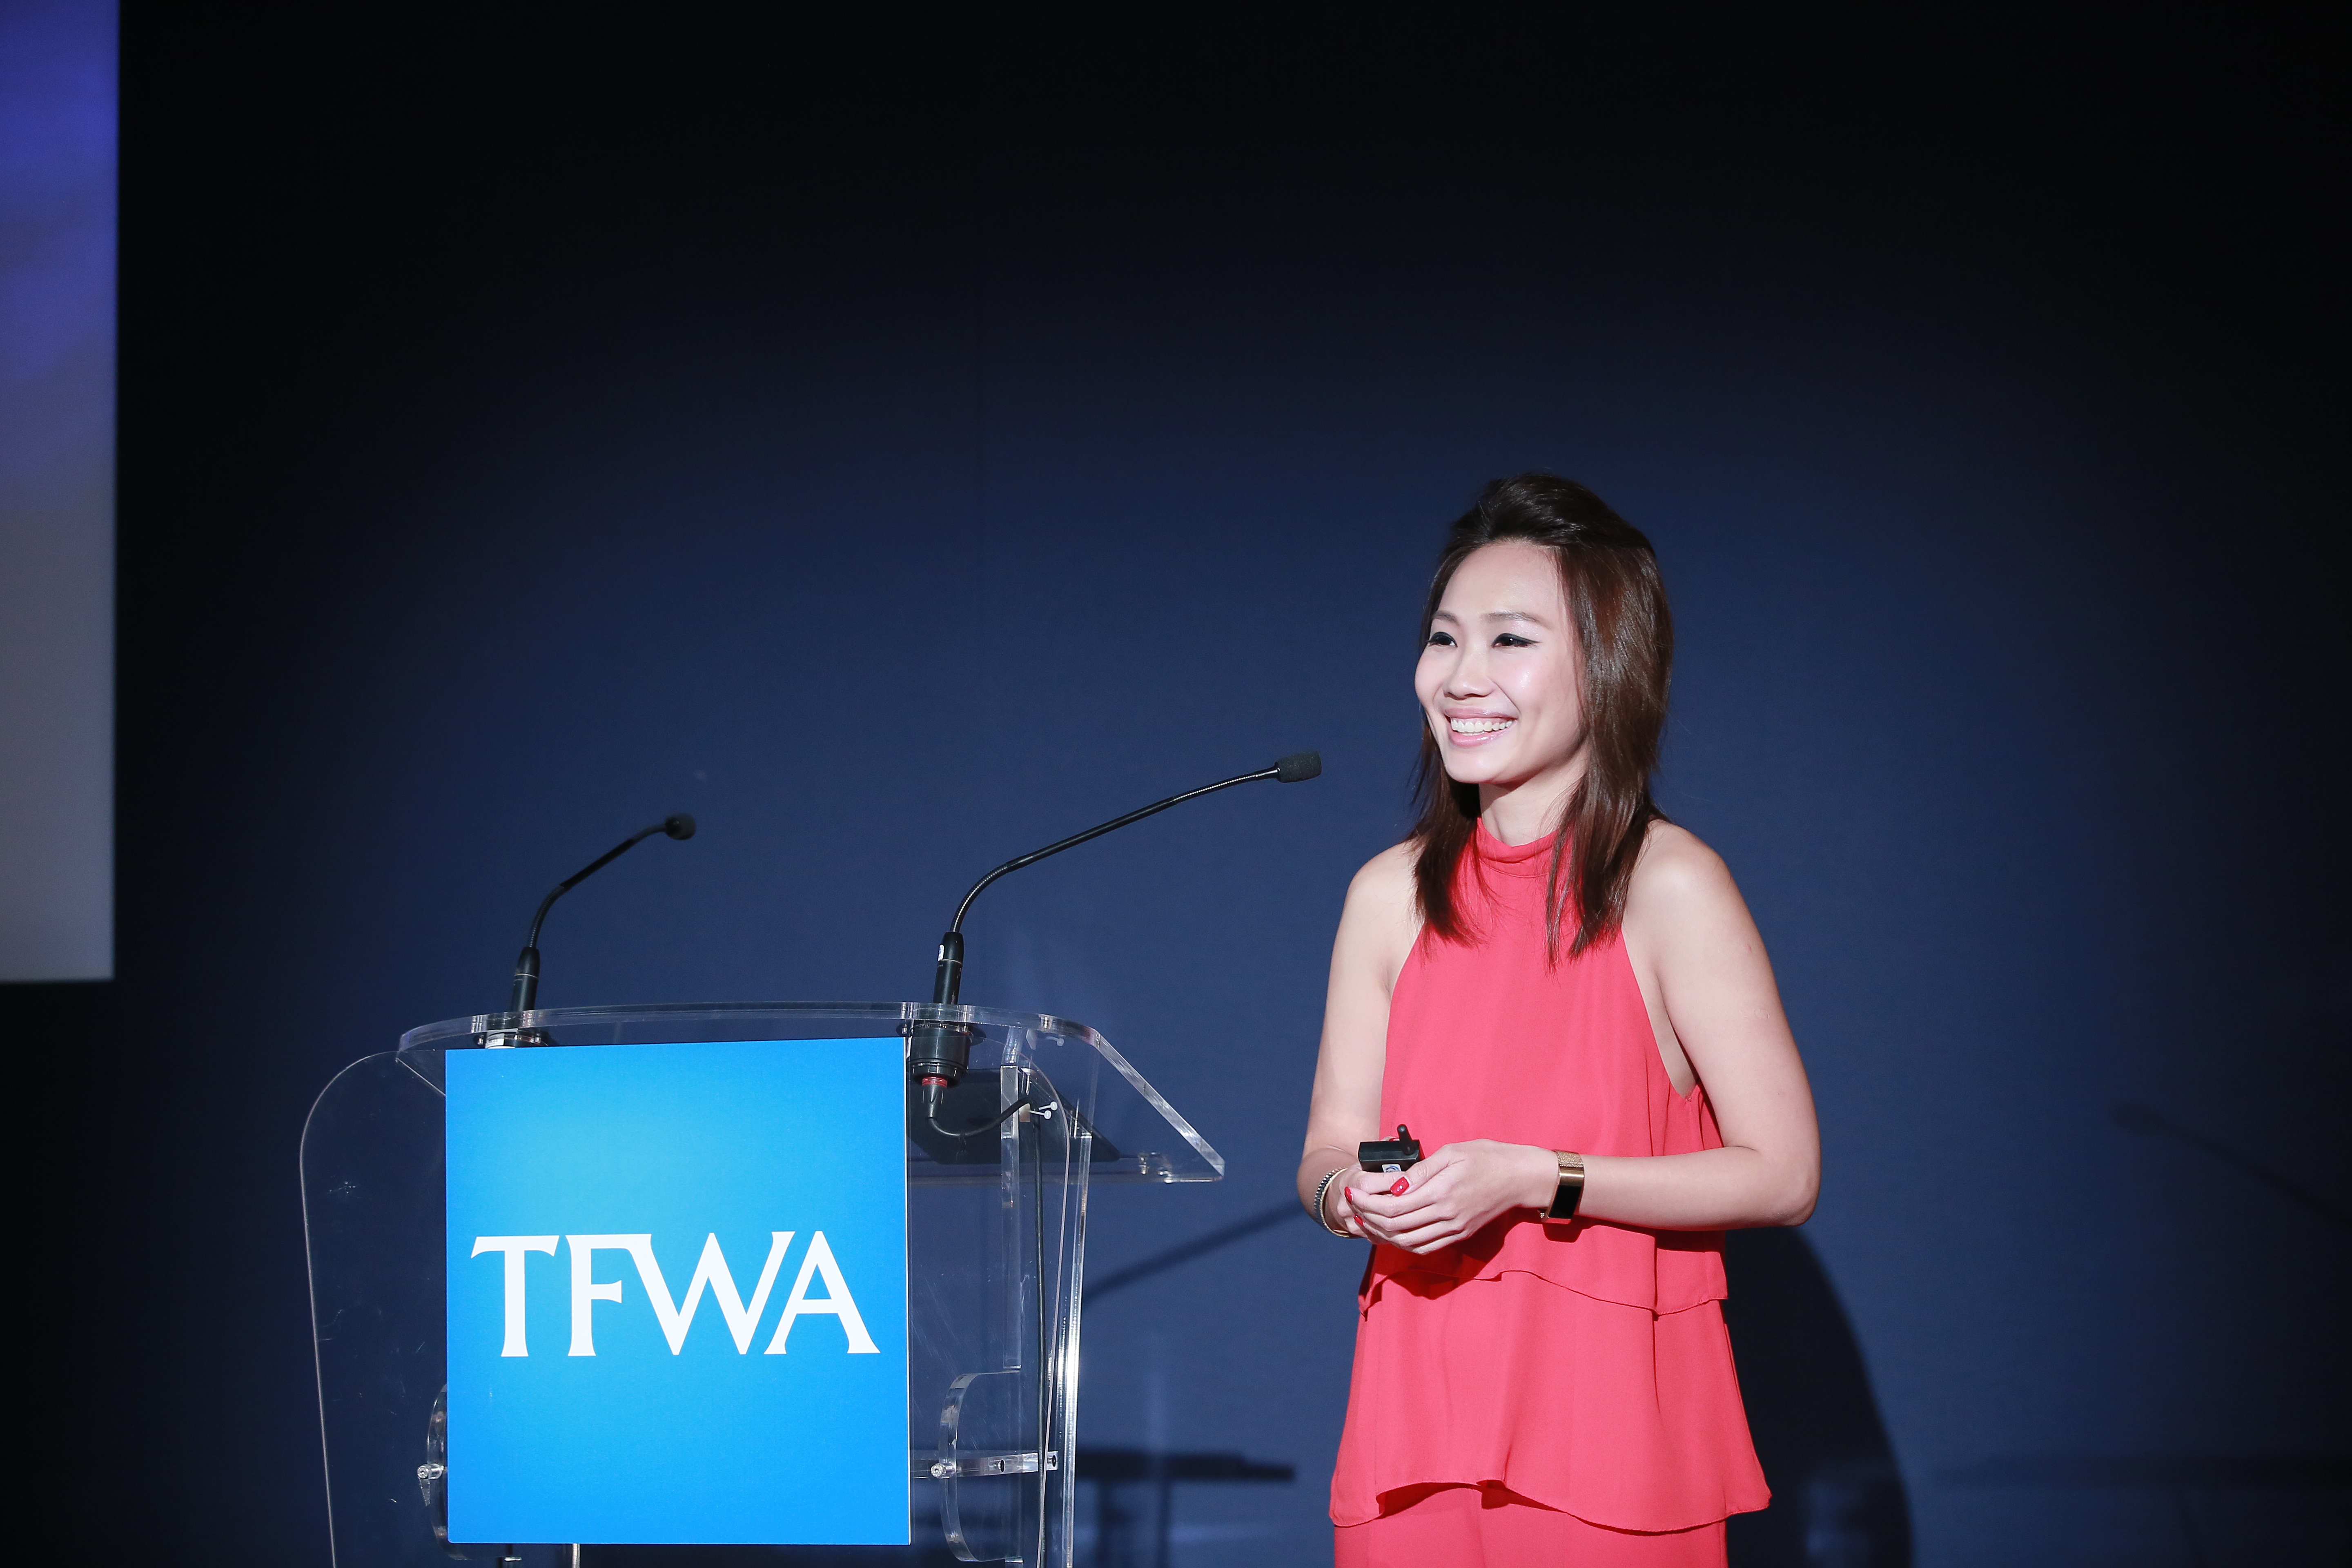 TFWA blog: Delivering digital